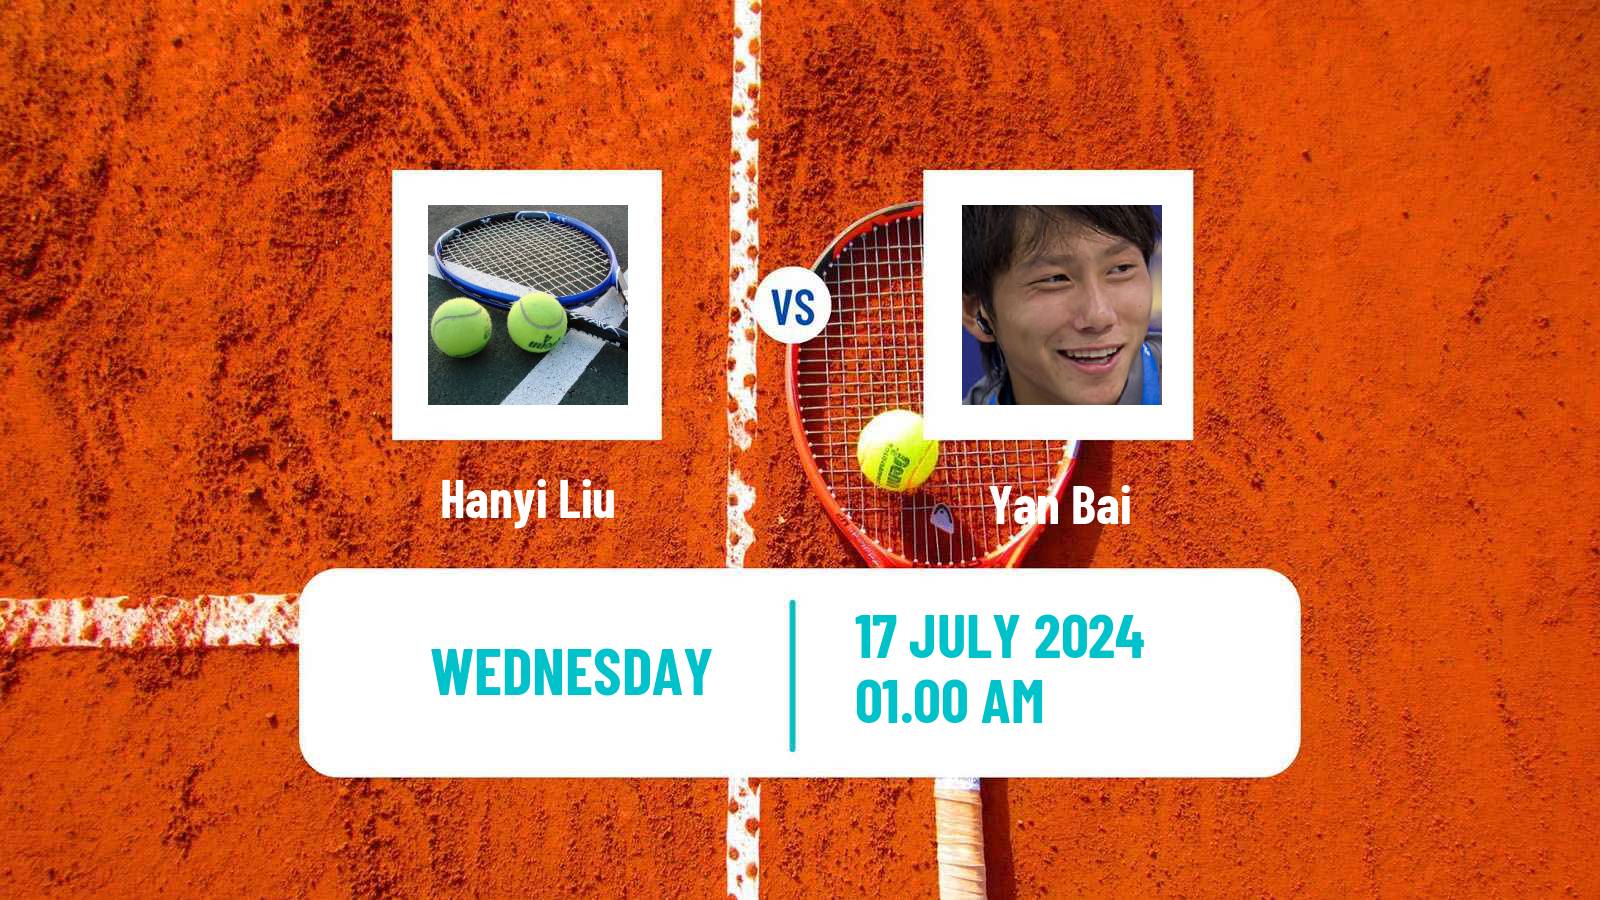 Tennis ITF M25 Tianjin 2 Men Hanyi Liu - Yan Bai